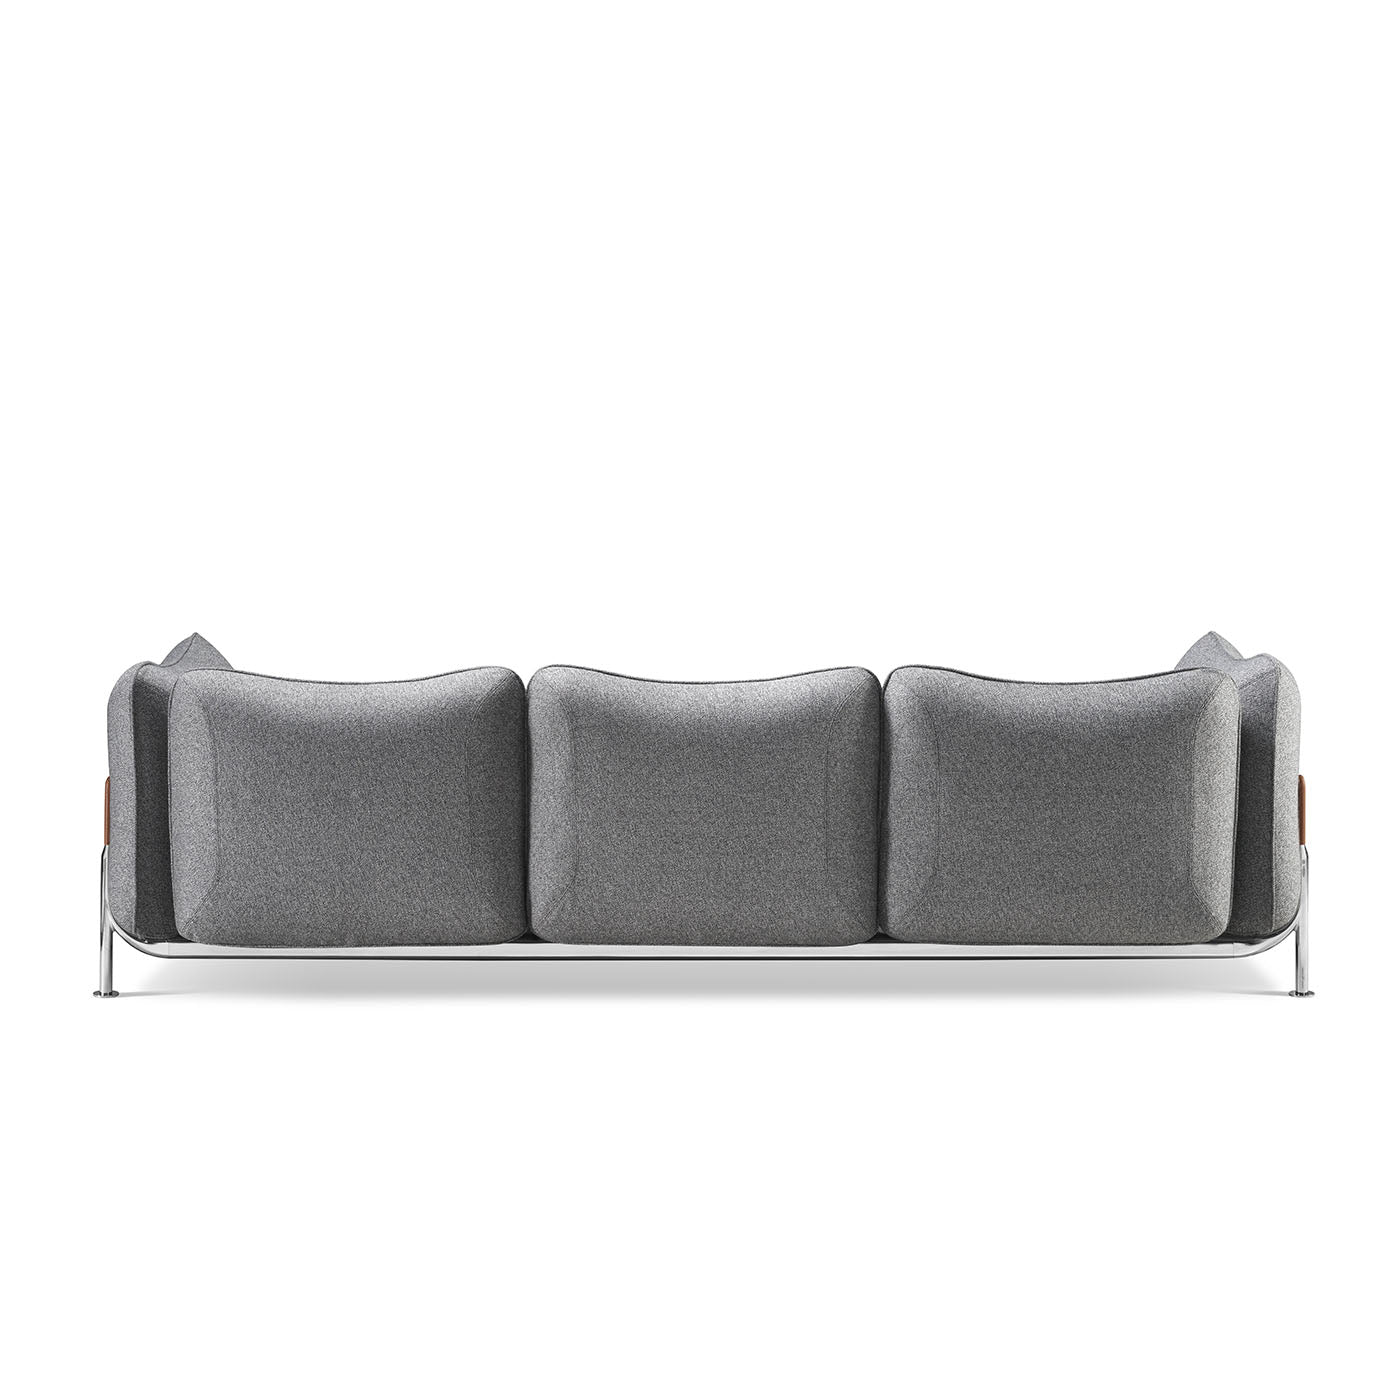 Tasca 3-Sitzer Sofa aus grauem Stoff - Alternative Ansicht 2